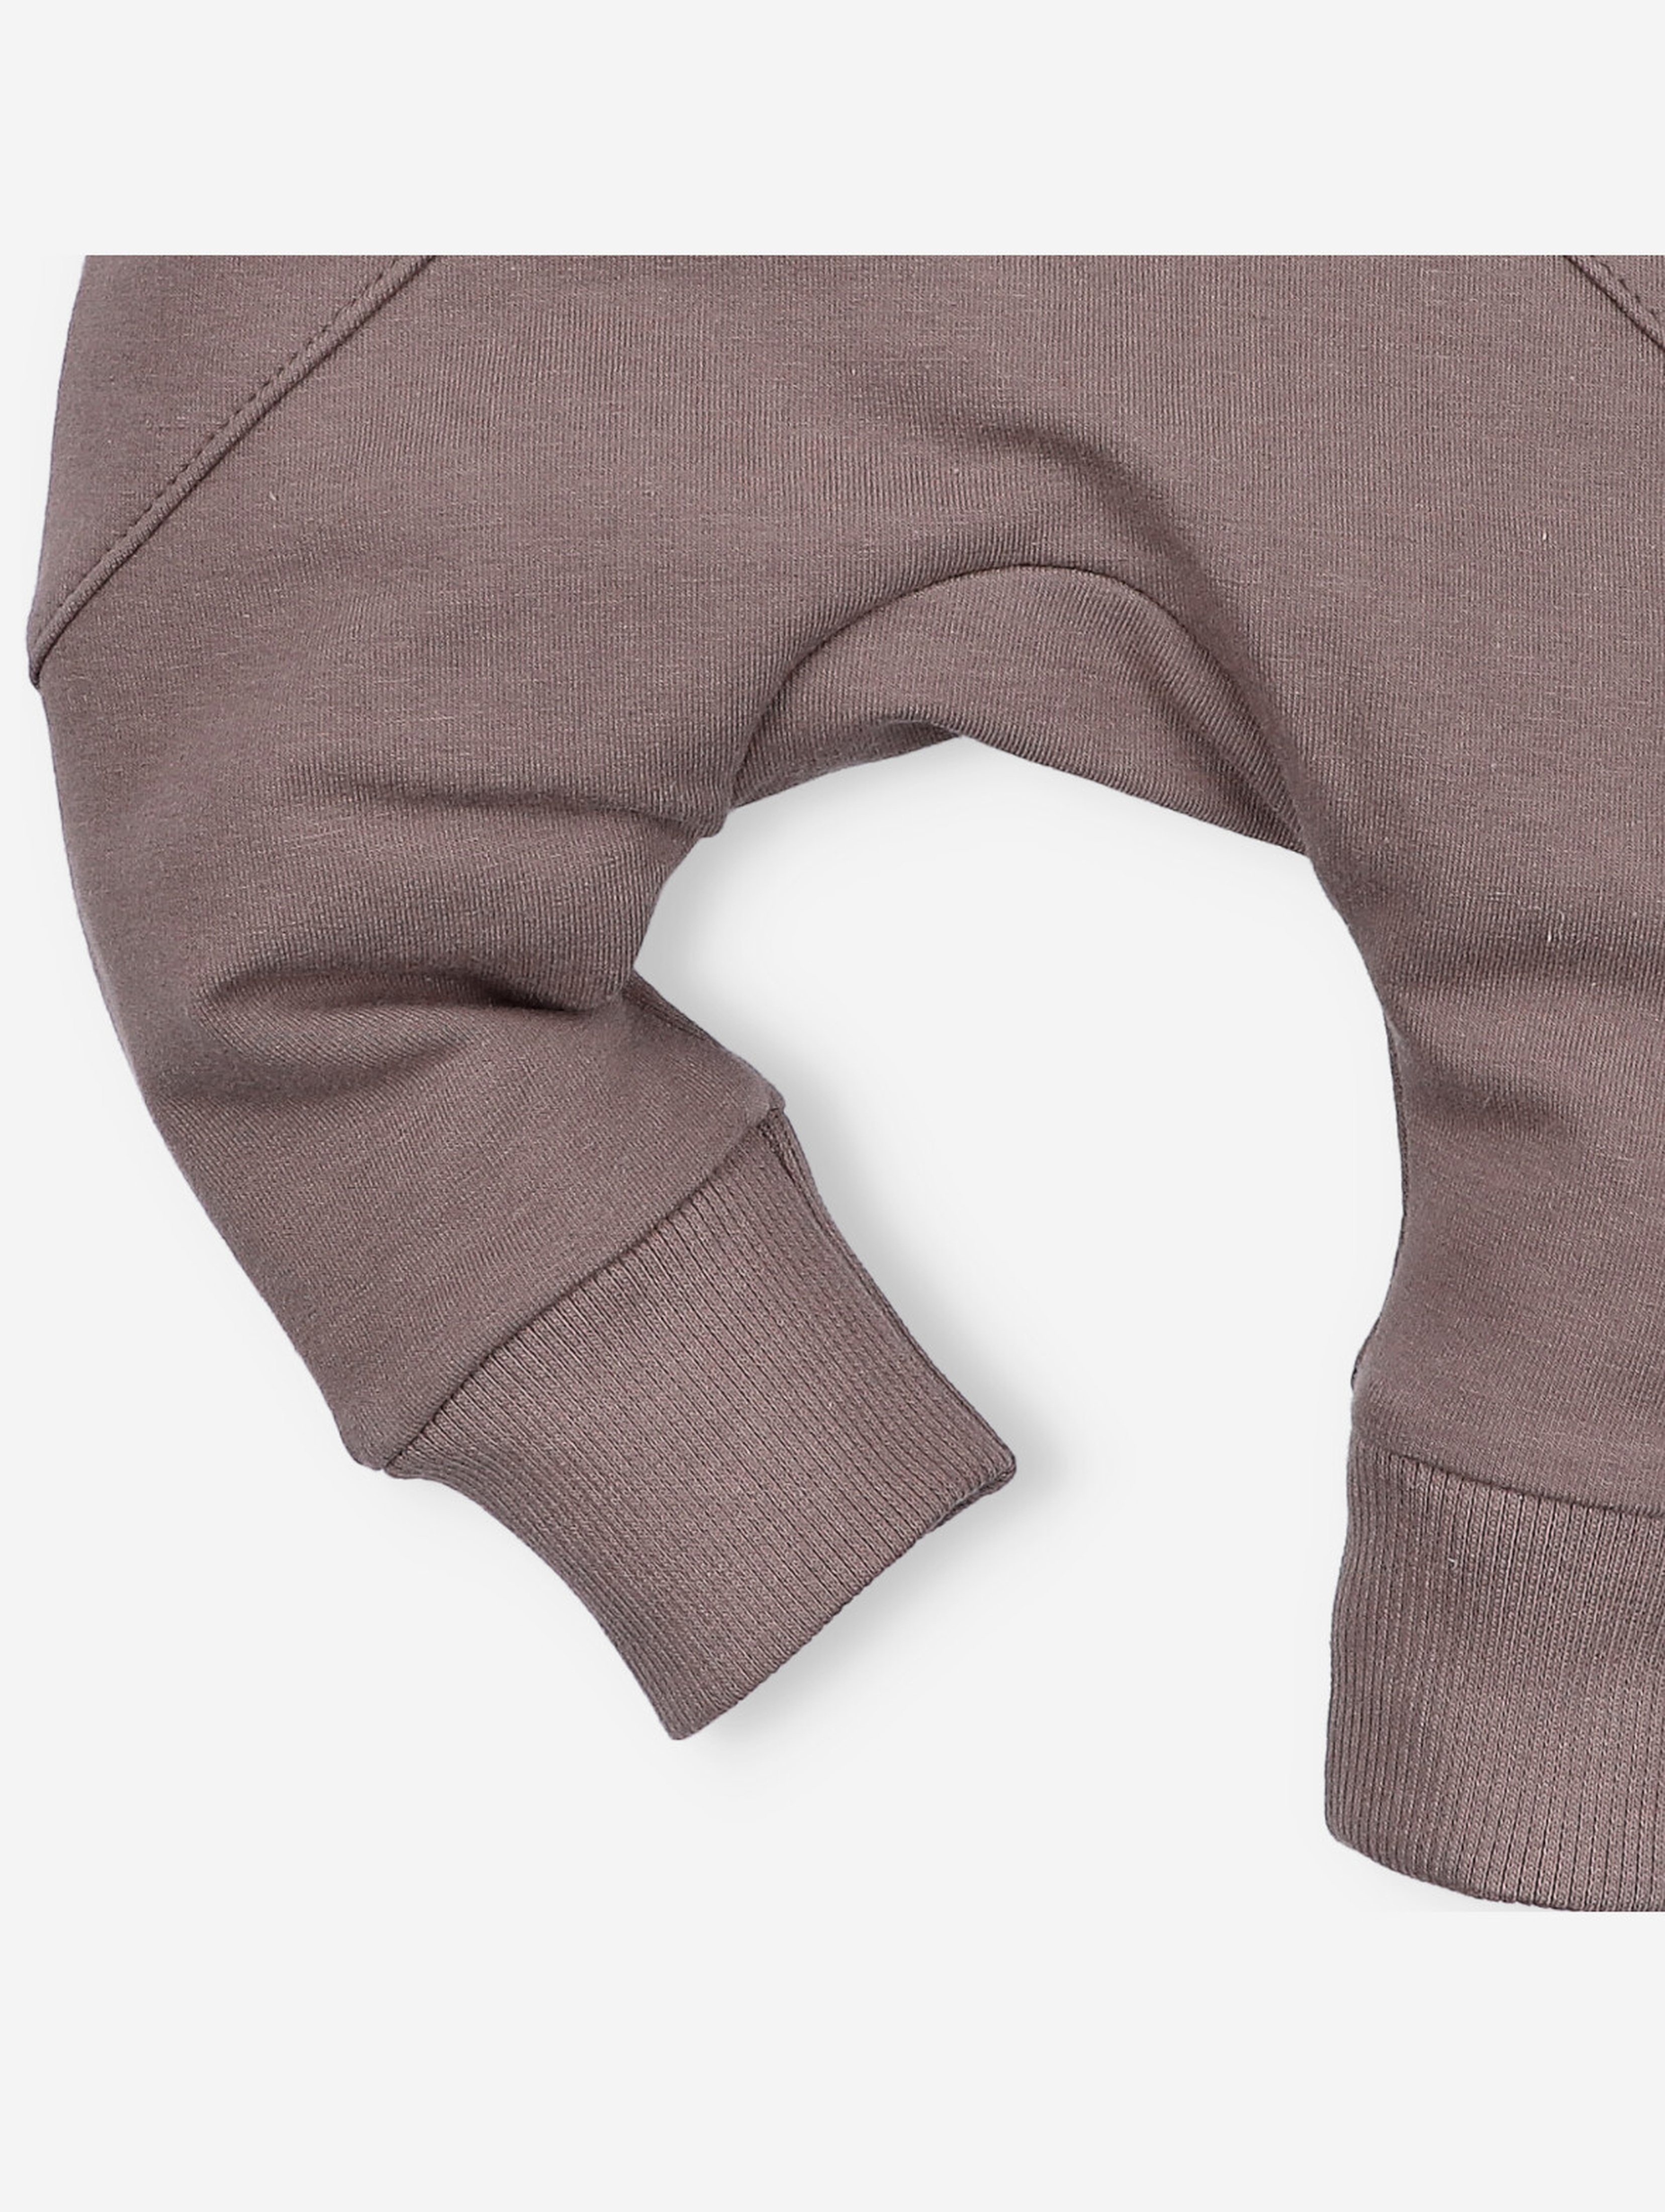 Spodnie niemowlęce z bawełny organicznej dla chłopca